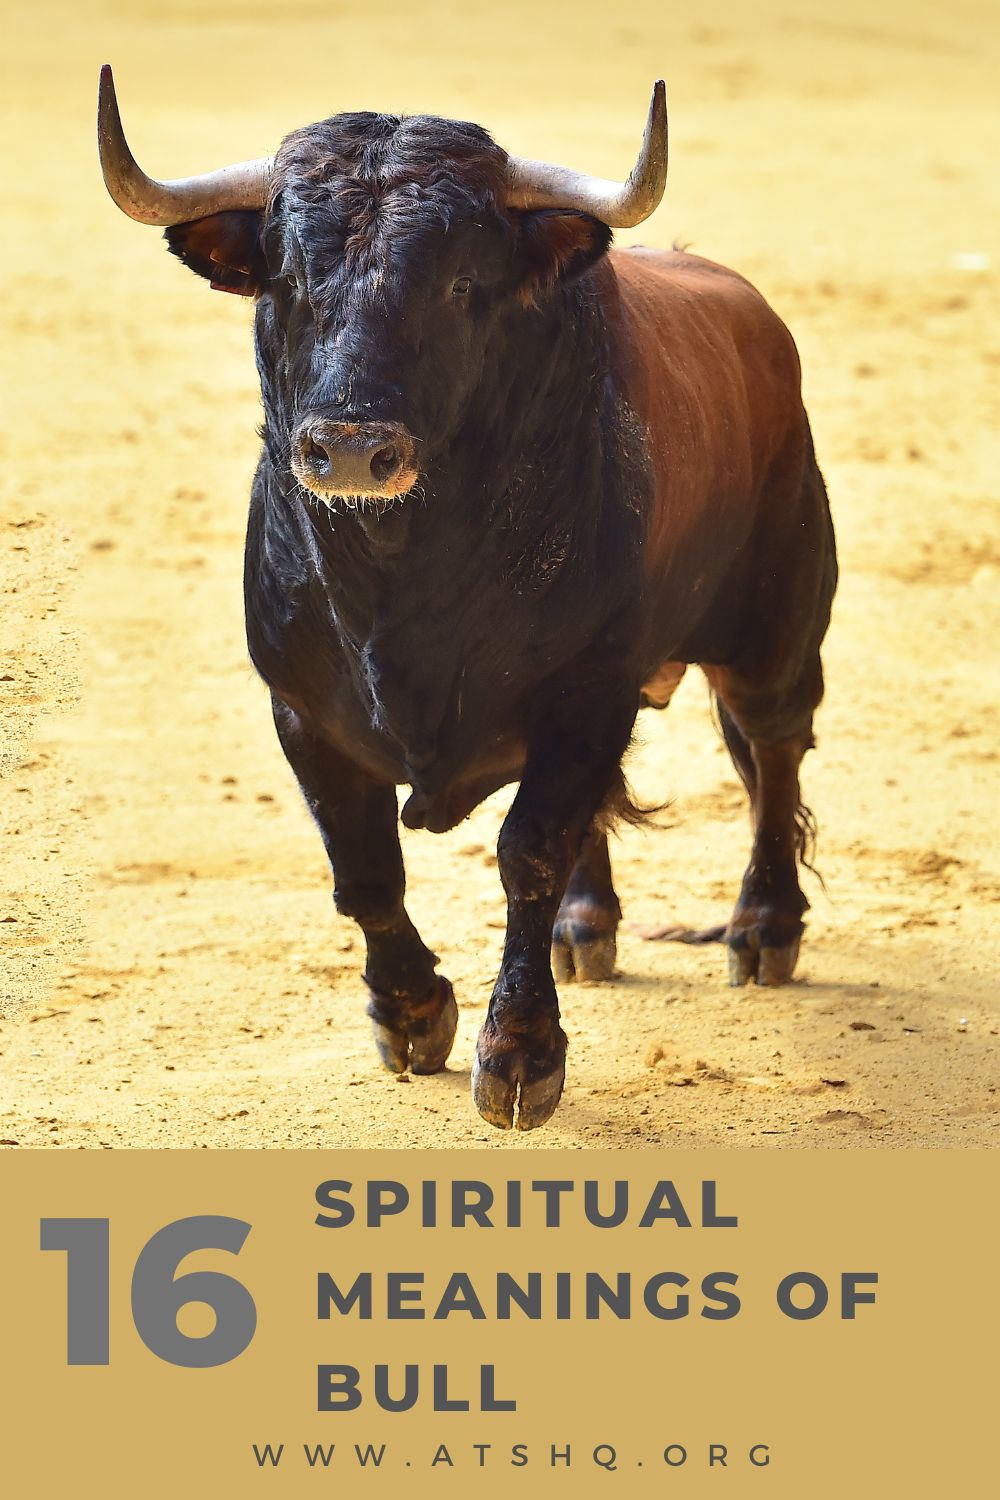 Bull Symbolism: 16 Spiritual Meanings Of Bull